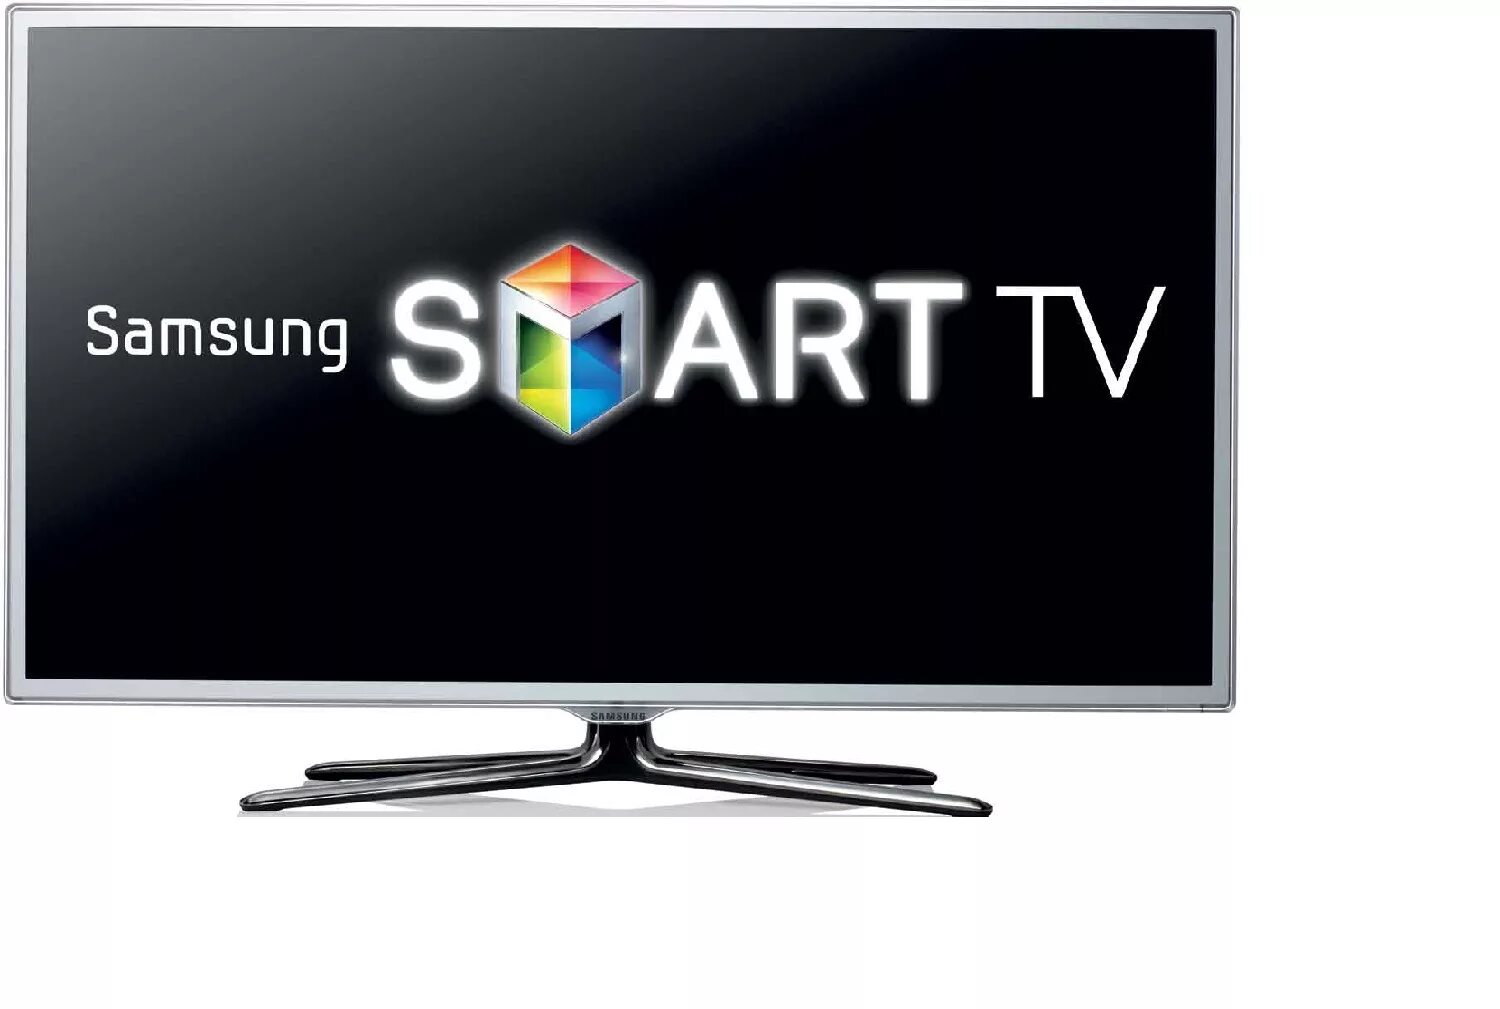 Samsung Smart TV. Телевизор самсунг смарт. IPTV Samsung Smart TV. Завис телевизор самсунг